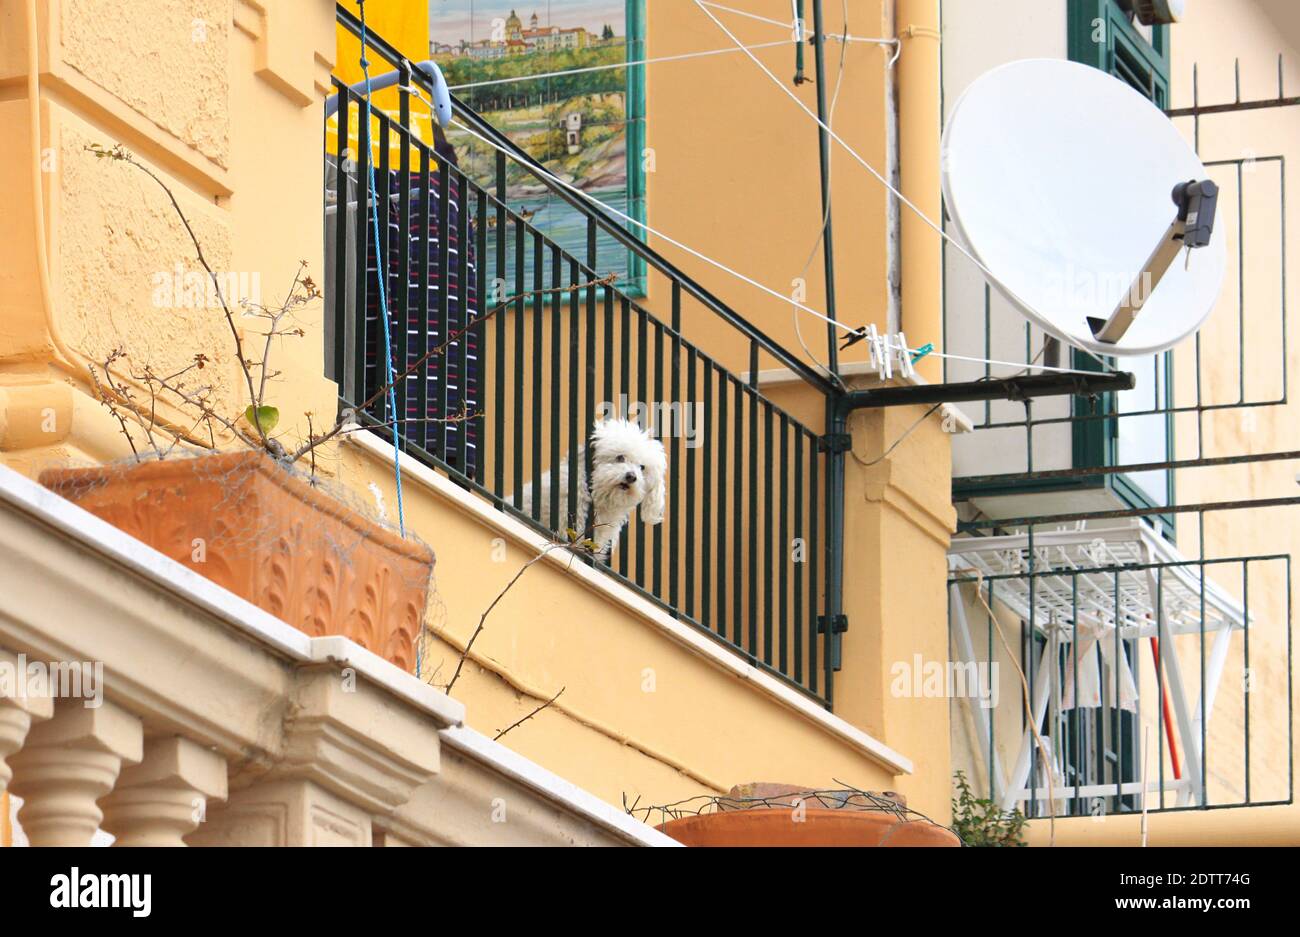 Il carino cane bianco sta guardando tra i bar di un balcone e probabilmente sta aspettando il suo proprietario. Una scena colorata dall'Italia meridionale. Foto Stock